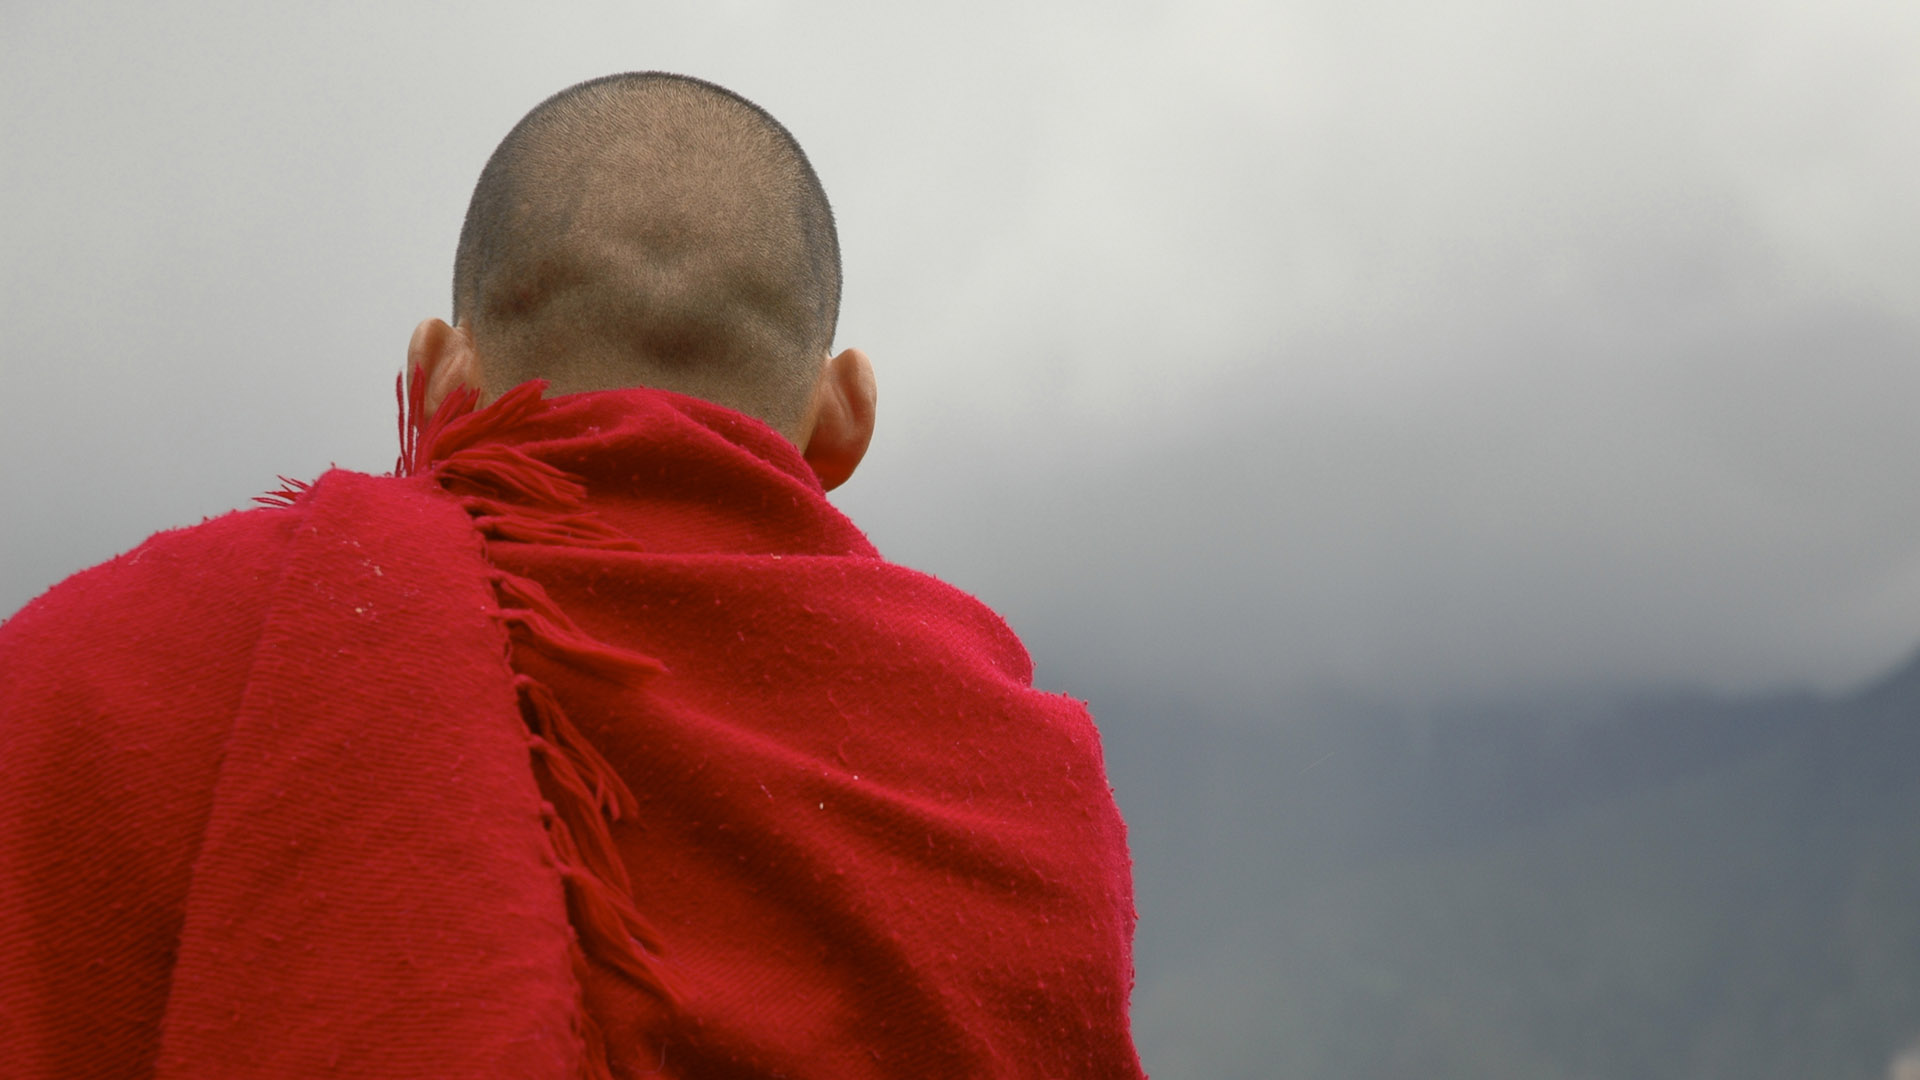 Para el budista los aspectos más importantes de la vida son la felicidad y la espiritualidad